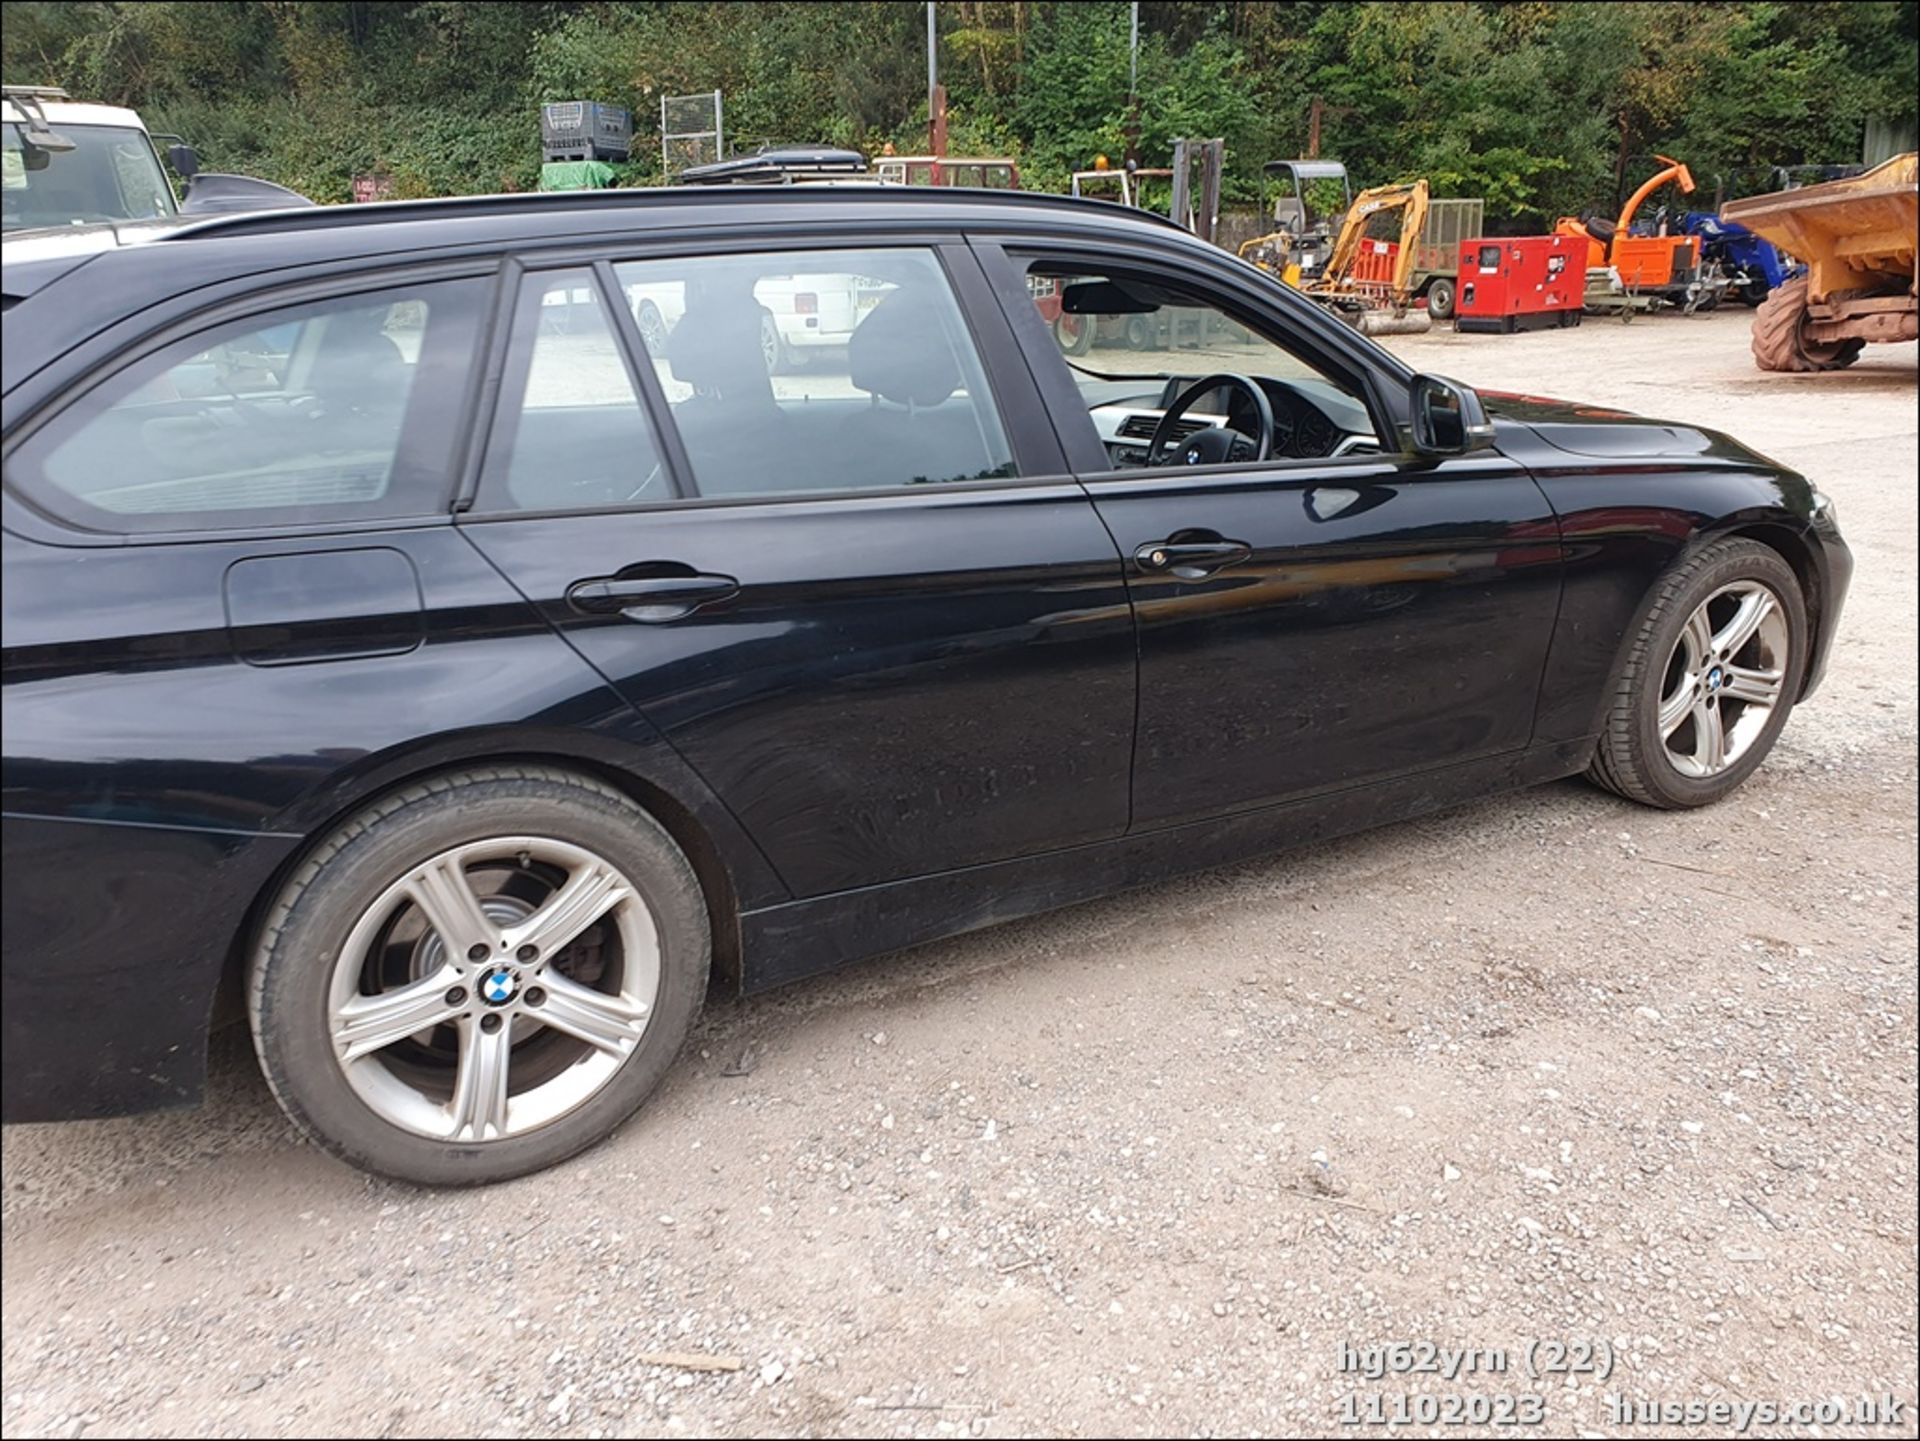 13/62 BMW 318D SE - 1995cc 5dr Estate (Black, 201k) - Image 23 of 58